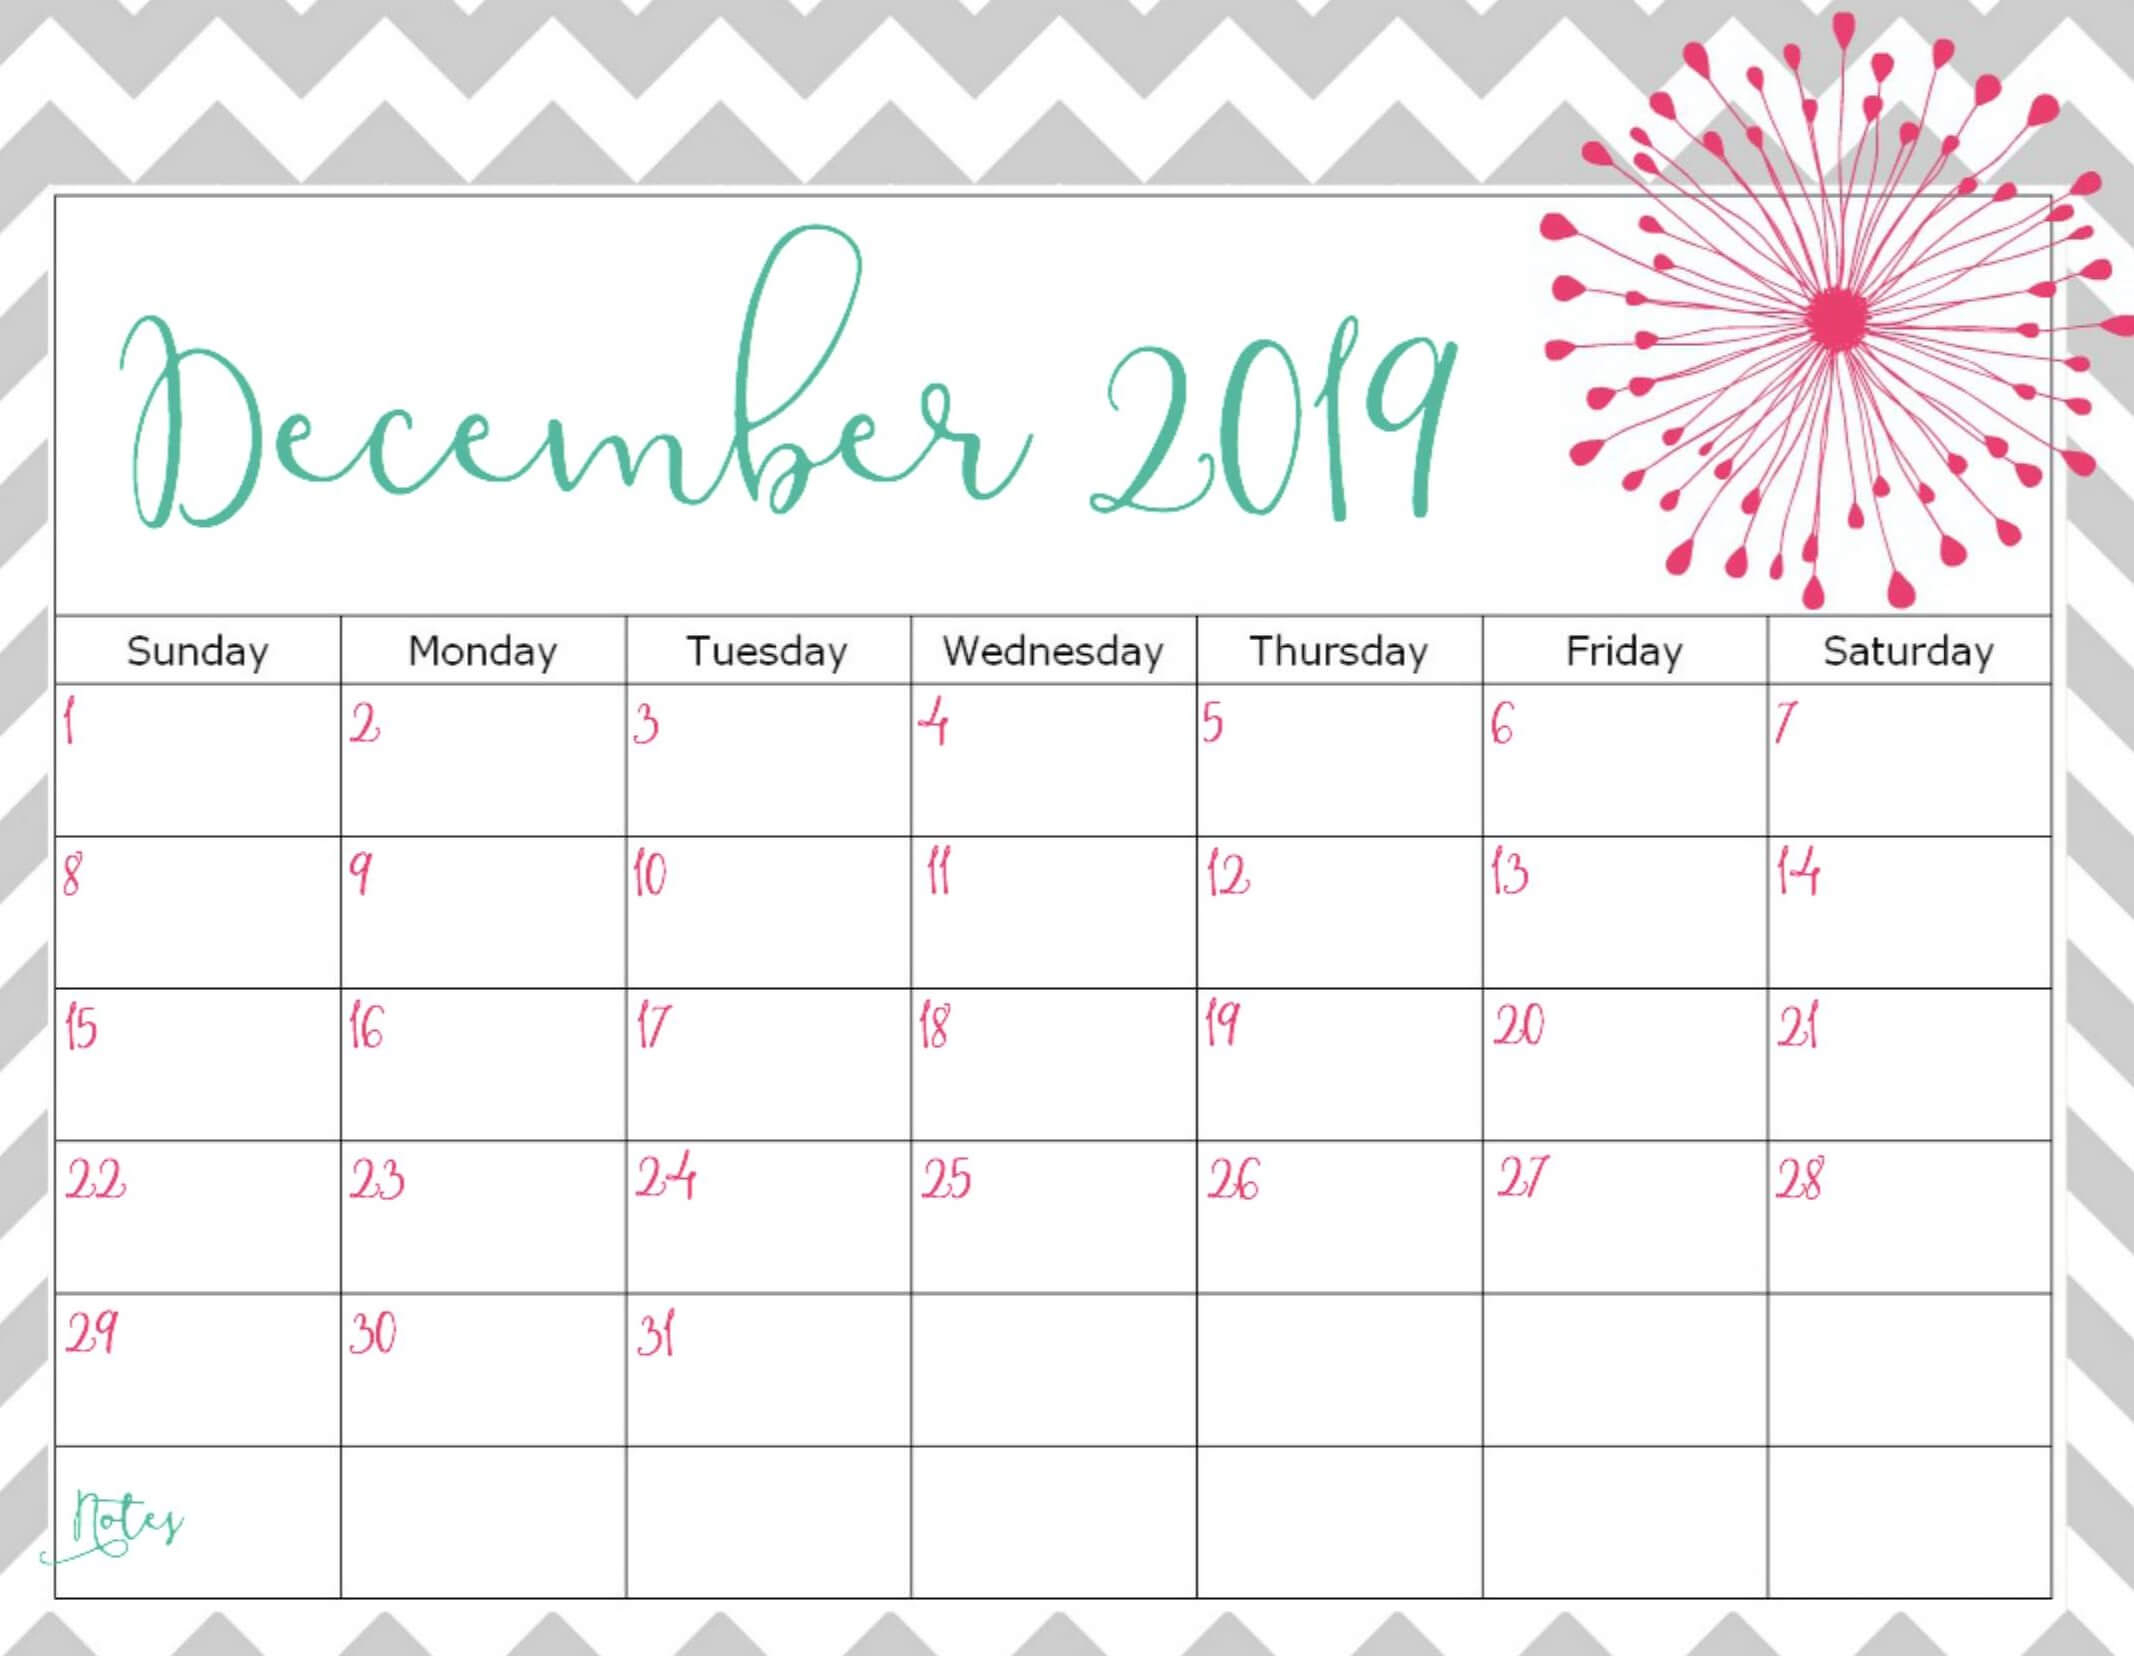 December Calendar Template Customize And Print